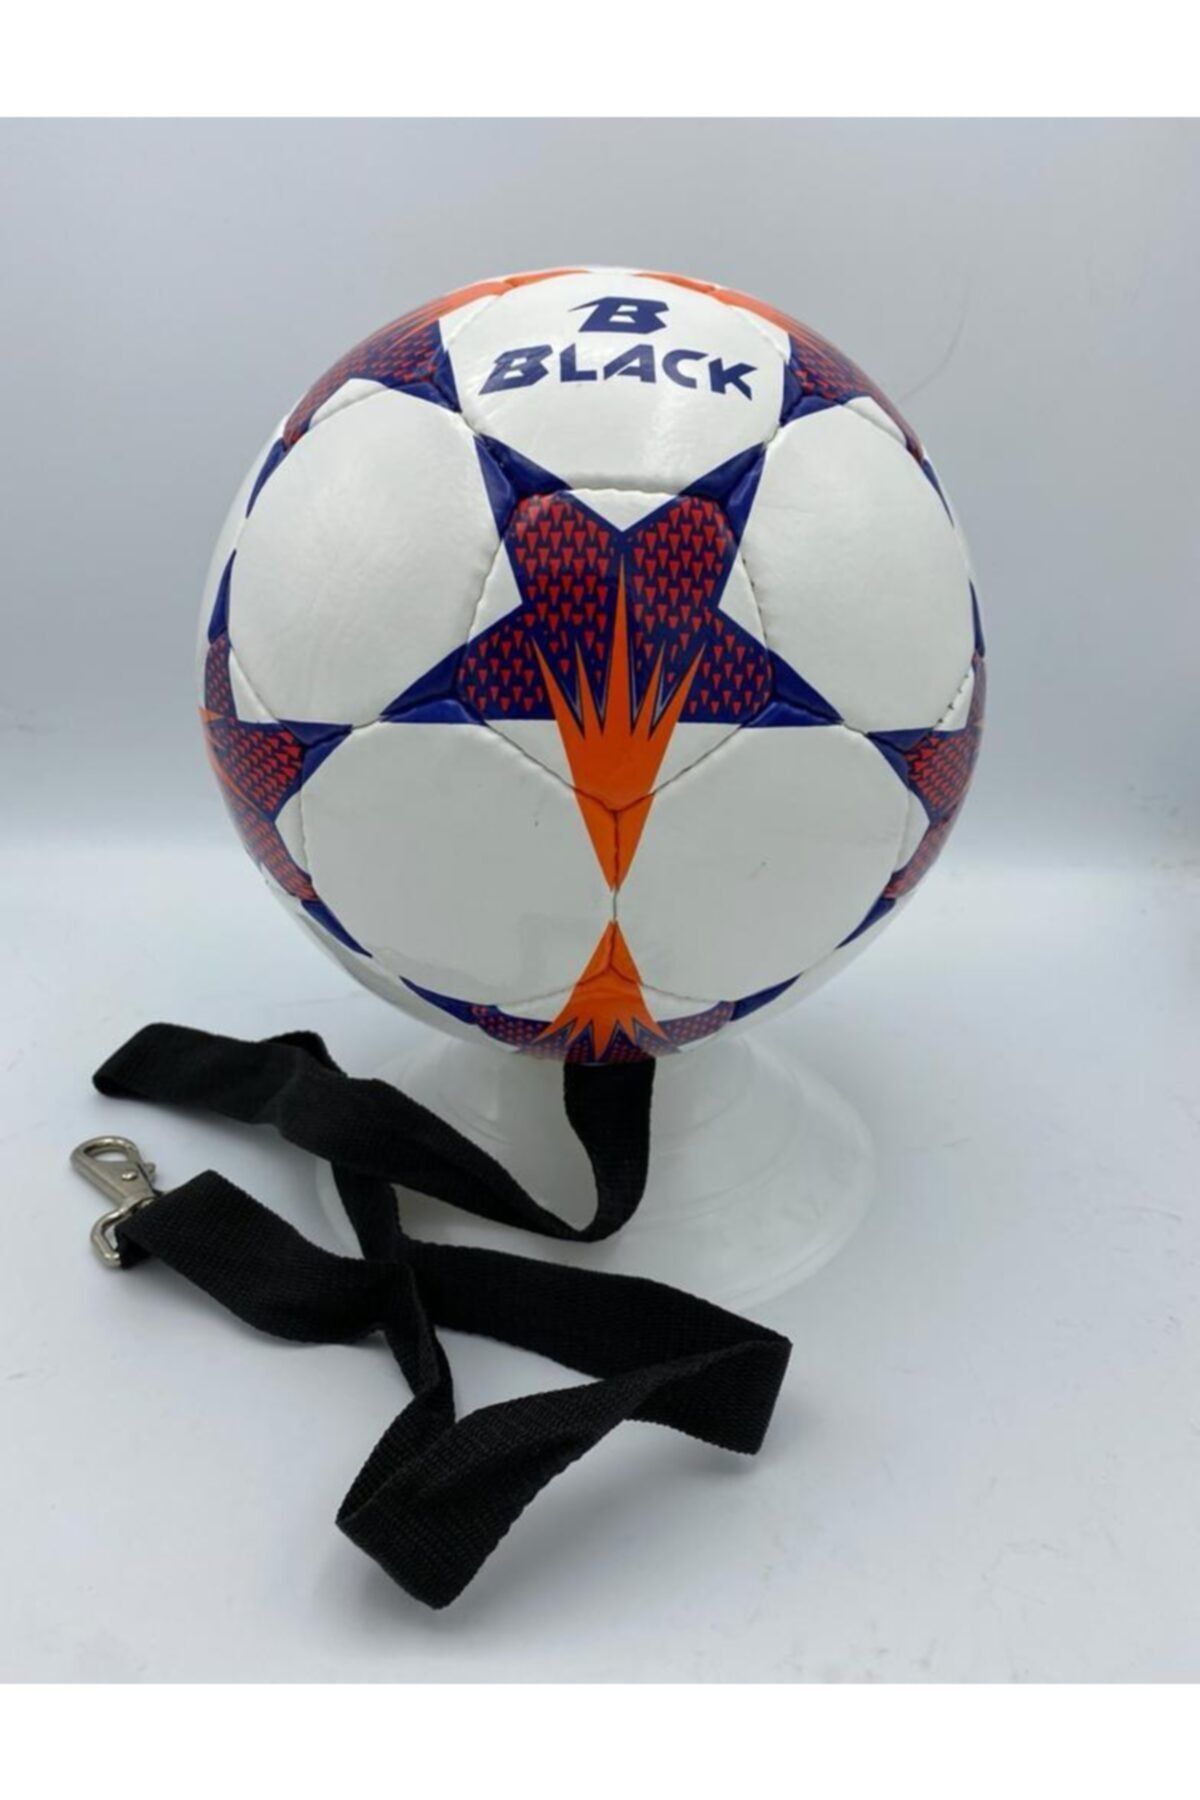 Povit No: 5 Black Snow Sarkaç Topu Kafa Topu 32 Panel El Dikişli Deluxe Pu Malzeme Kafa Topu Futbol Topu